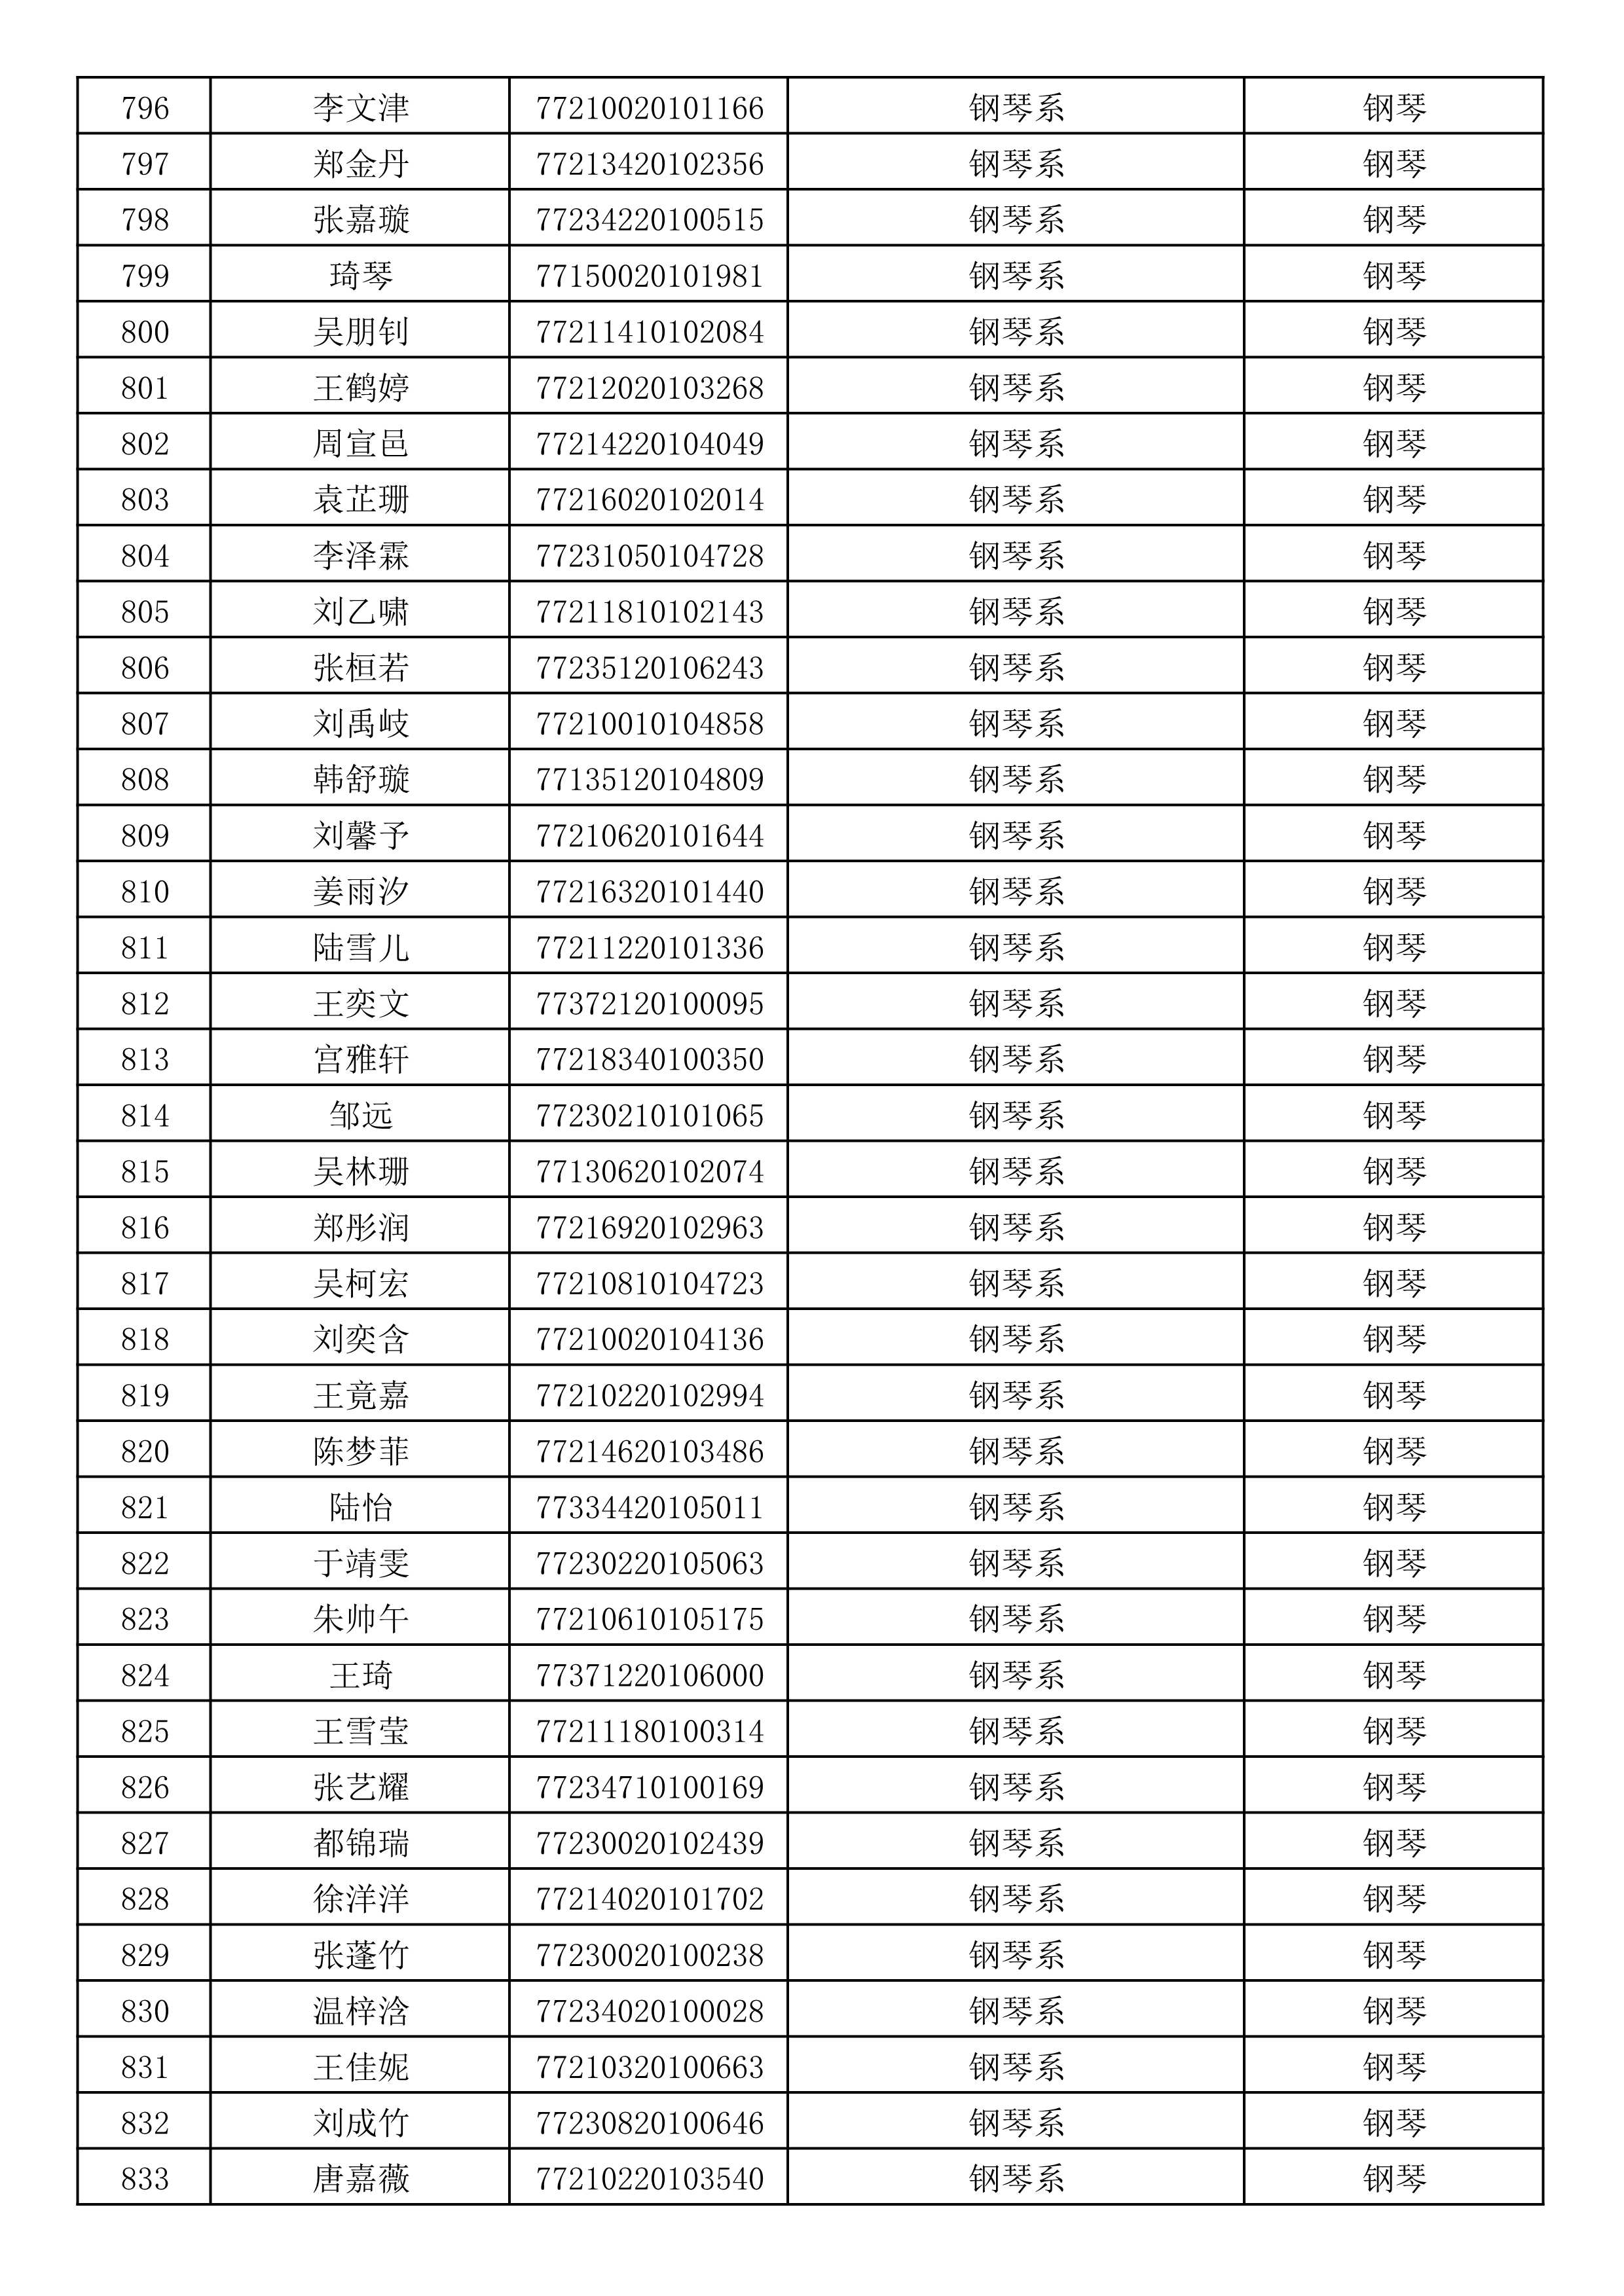 沈阳音乐学院2019年本科招生考试初试合格名单_22.jpg